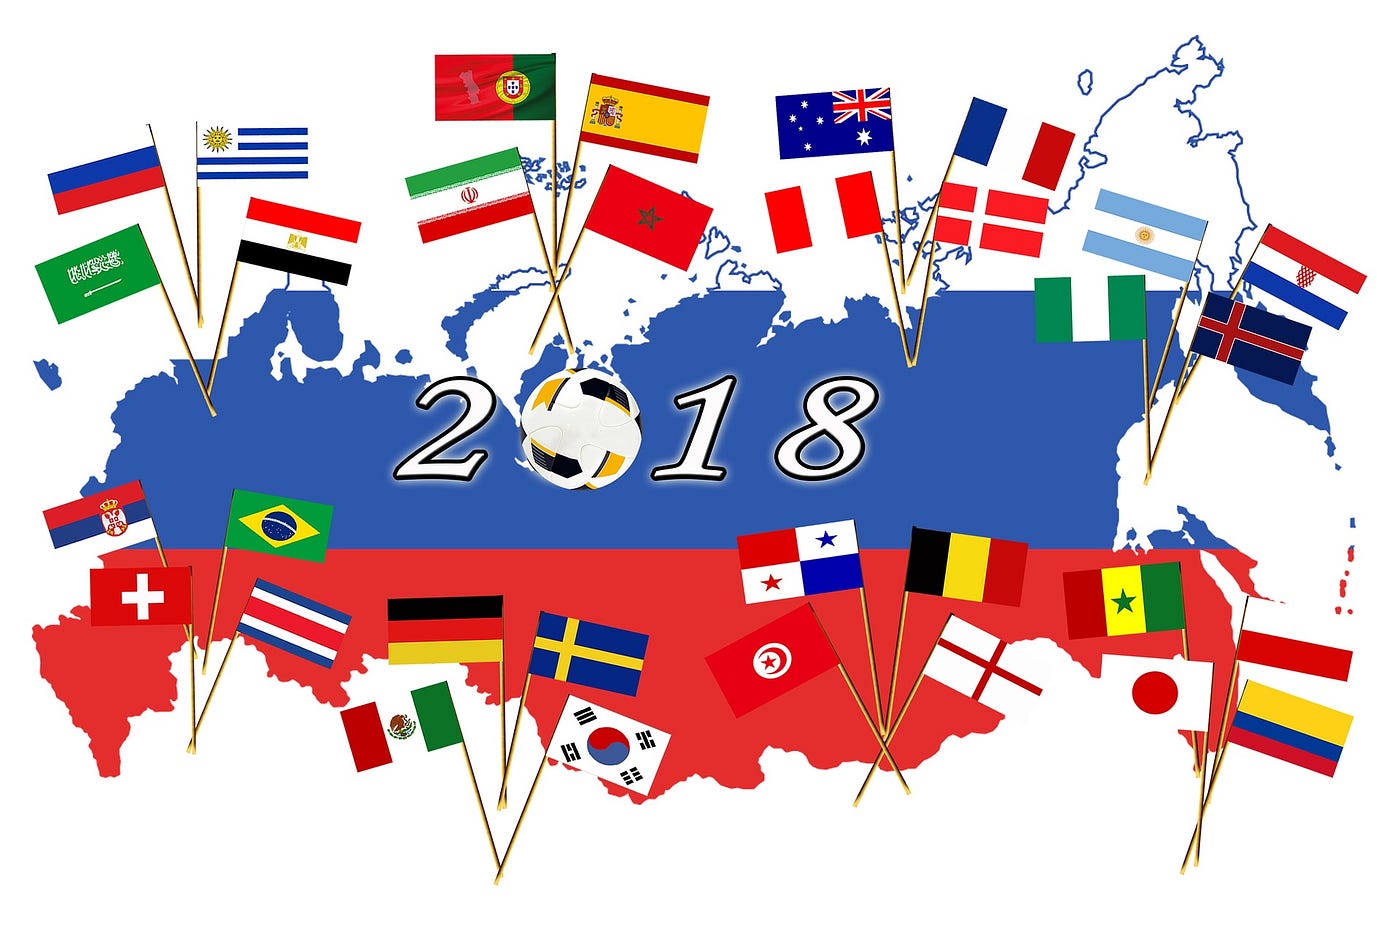 تأثير كأس العالم على الاقتصاد الروسي | by James Rogers | Medium